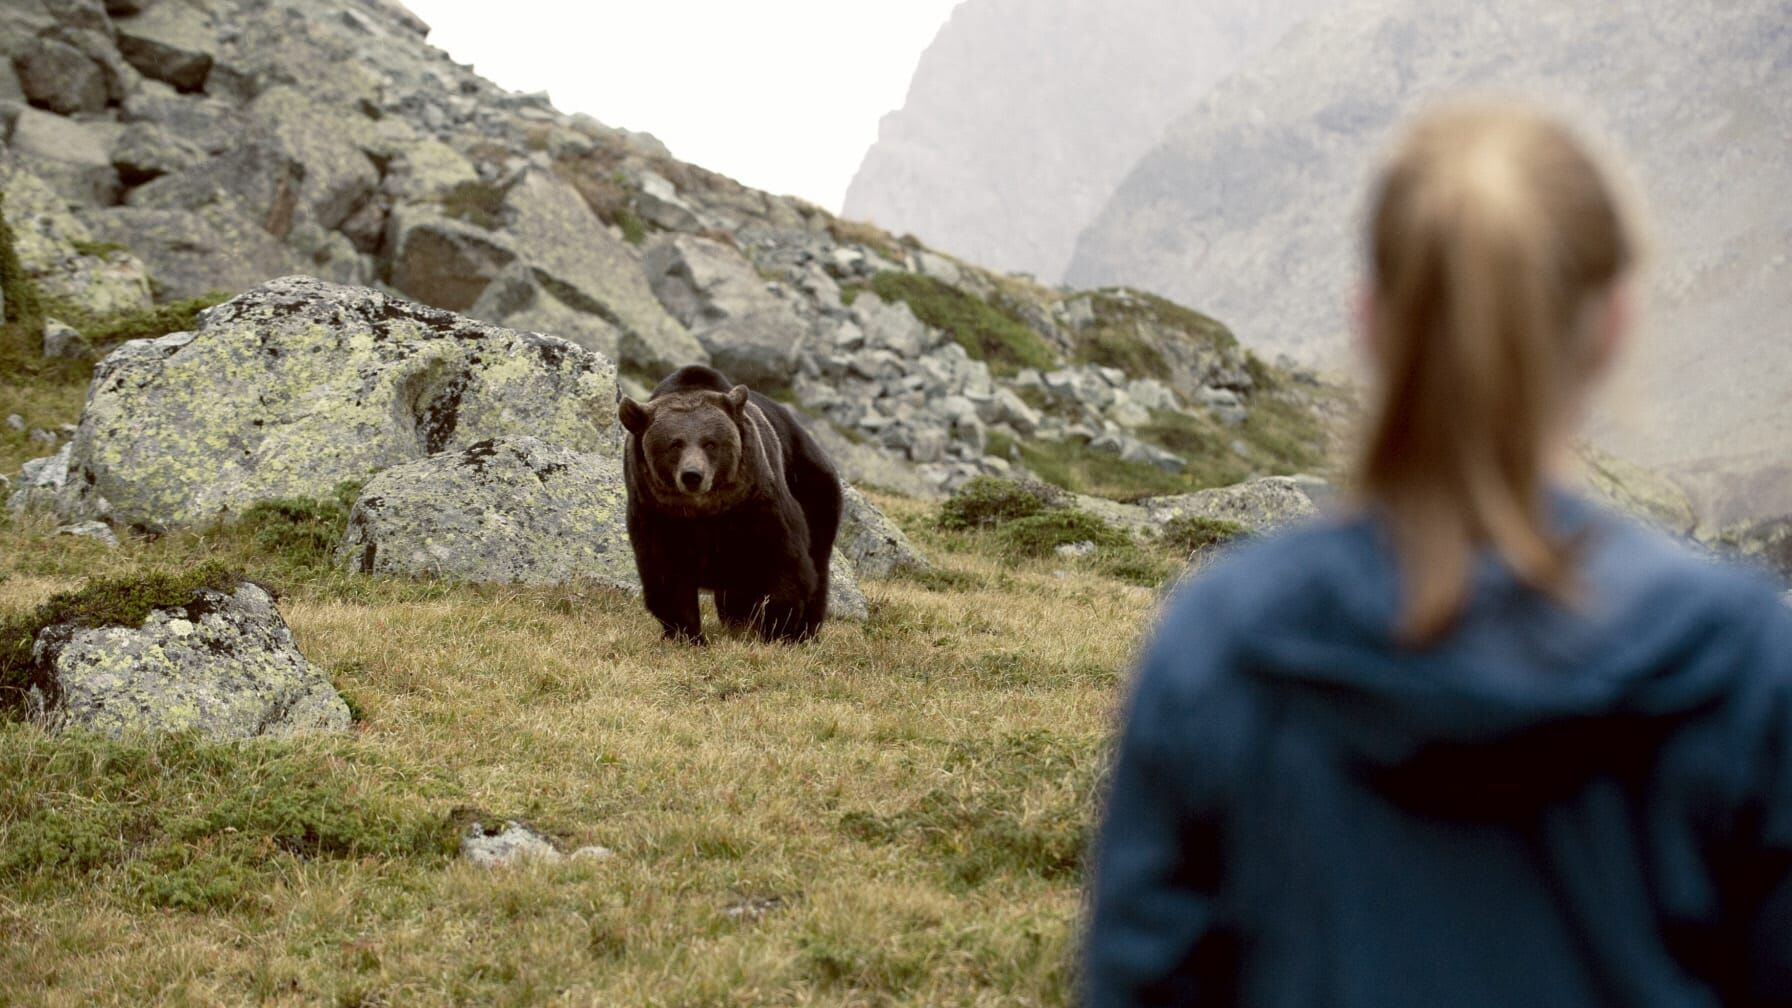 Clara und das Geheimnis der Bären